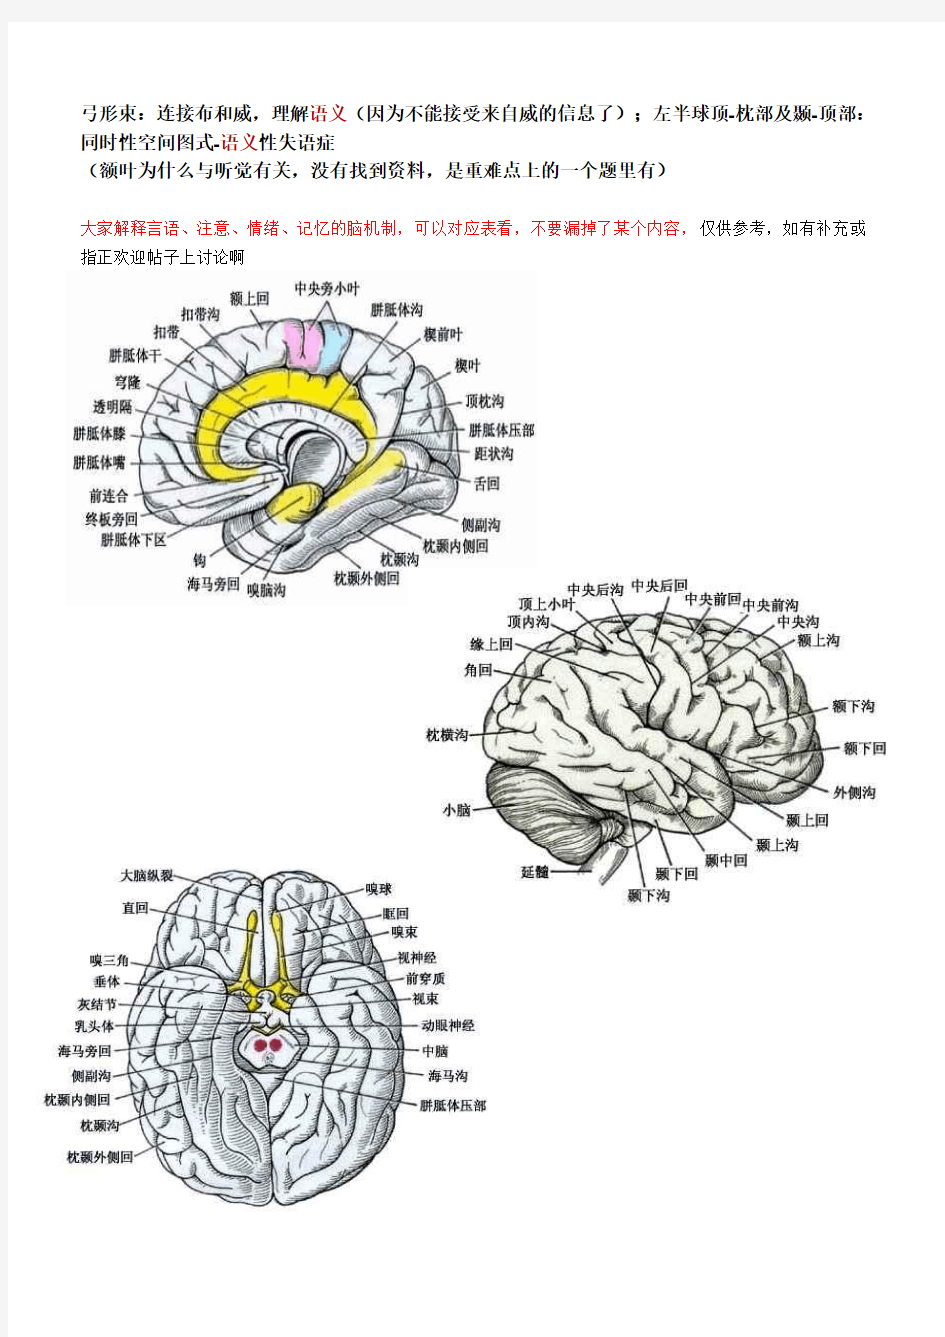 大脑各区功能整理-附脑结构图(搞定这个选择题吧)